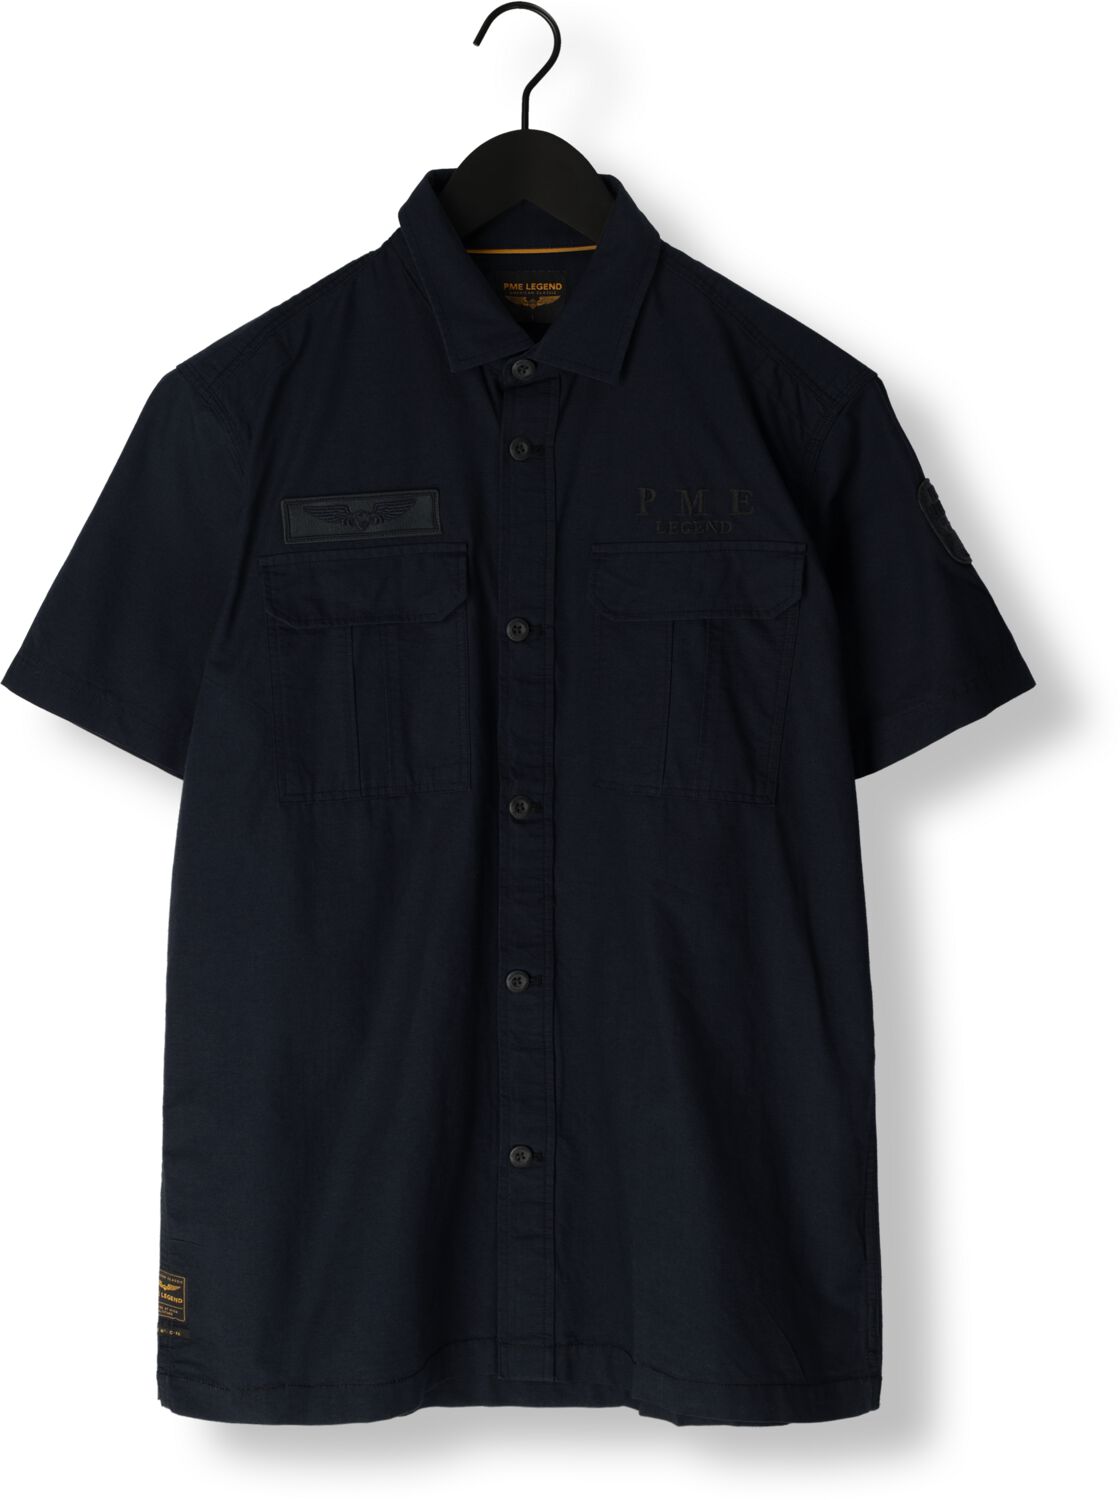 PME LEGEND Heren Overhemden Short Sleeve Shirt Ctn Ottoman Blauw